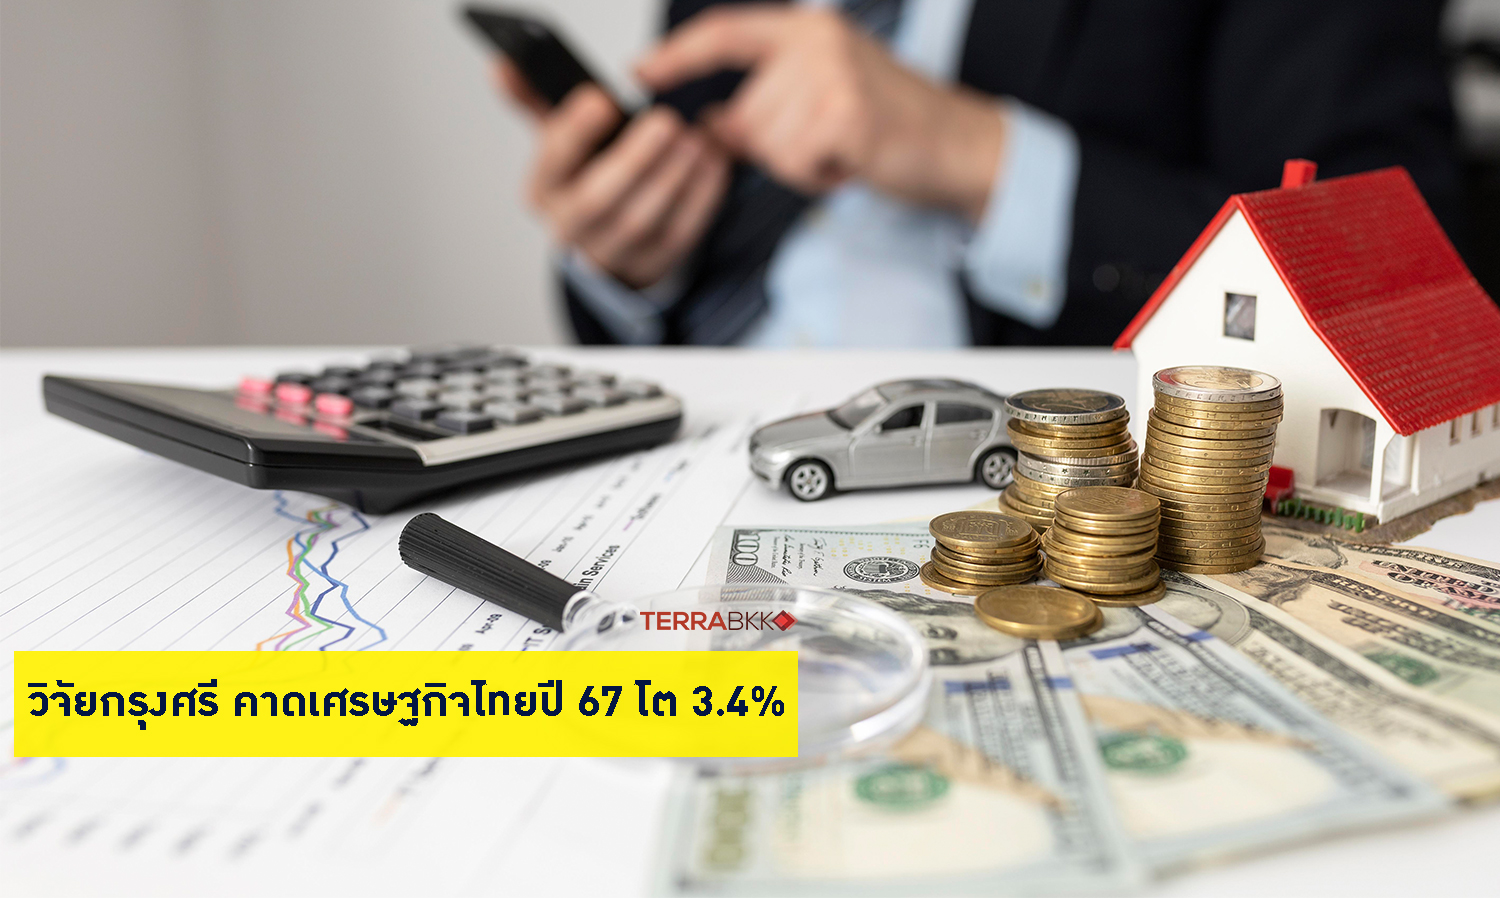 วิจัยกรุงศรี คาดเศรษฐกิจไทยปี 67 โต 3.4% แต่ส่งออกยังเผชิญความเสี่ยง